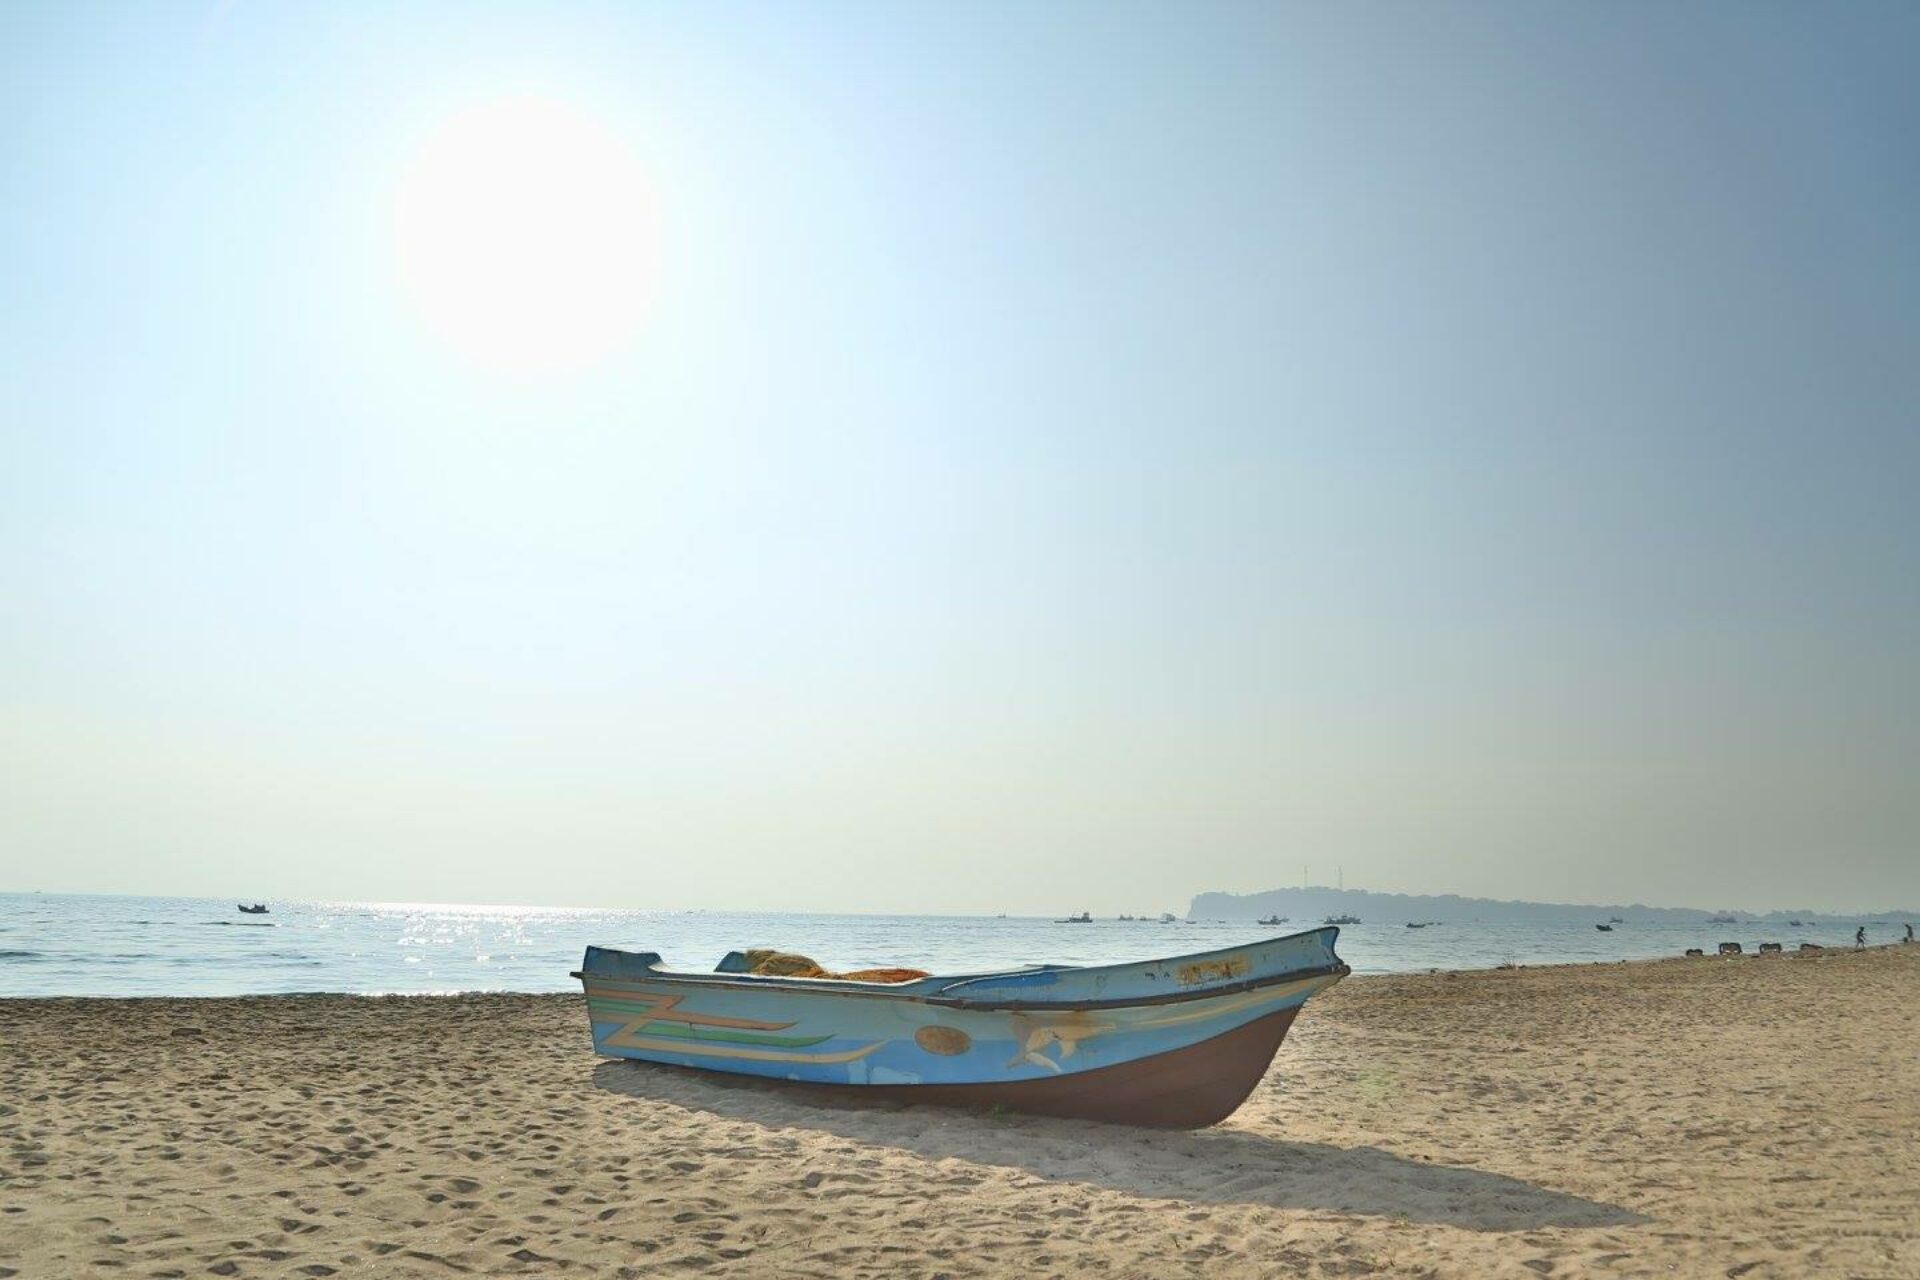 JKAB Beach Resort Sri Lanka trincomalee original asia rondreis sri lanka malediven boot